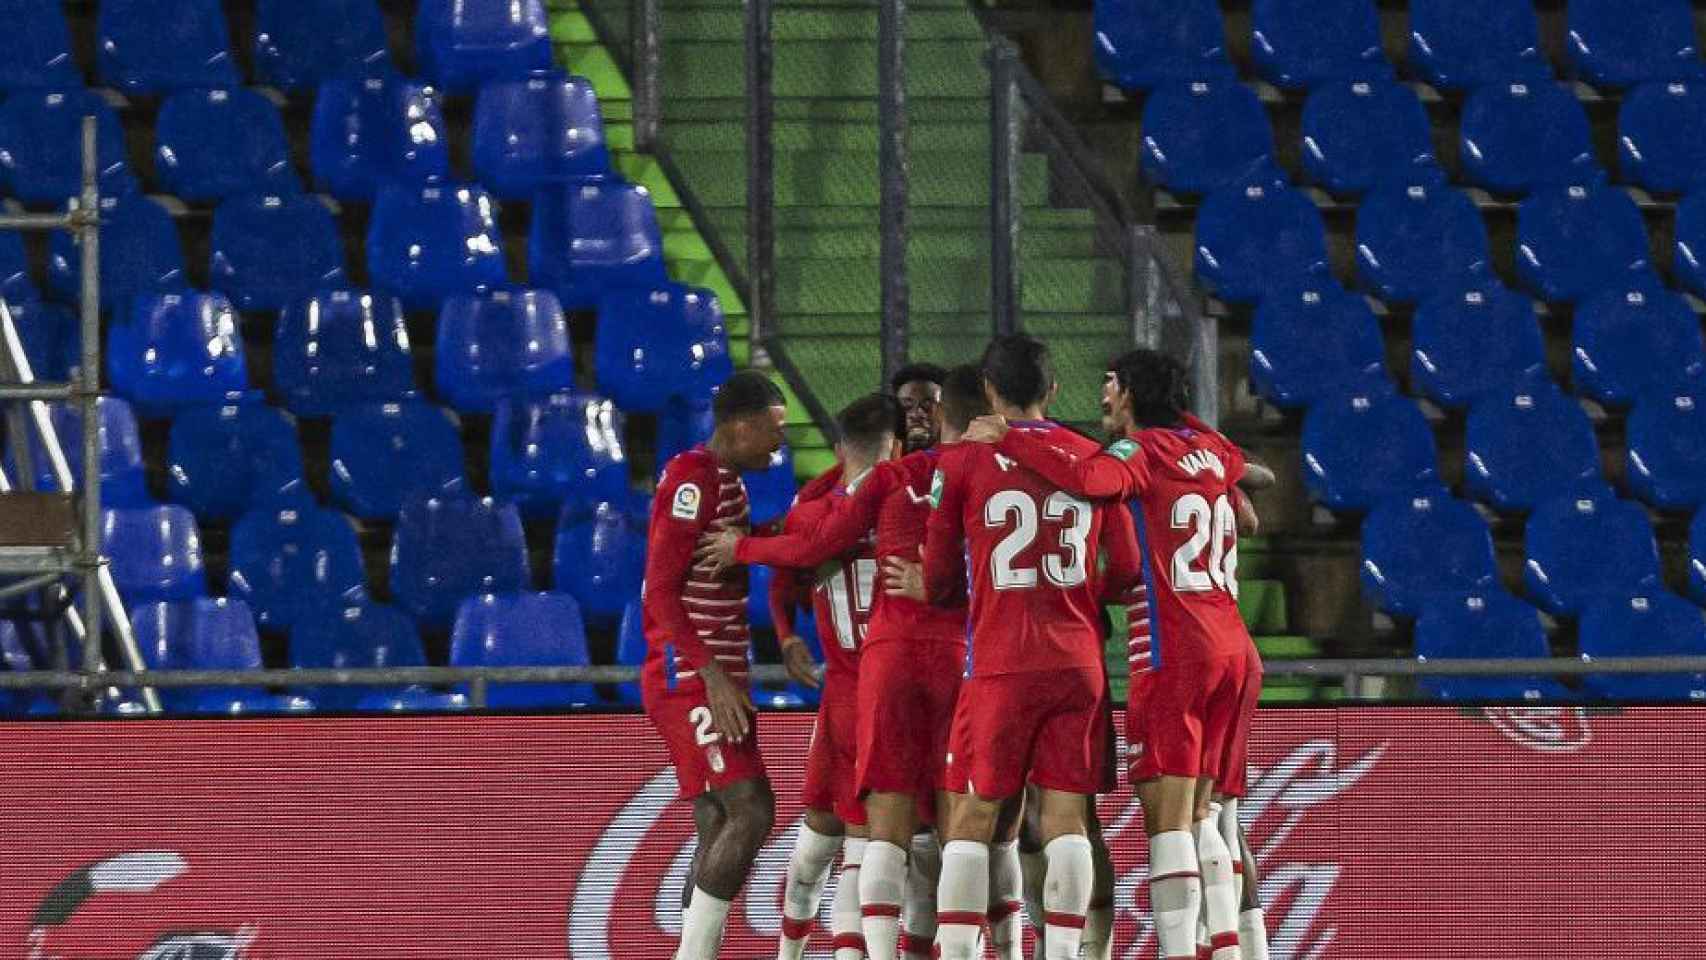 Piña de los jugadores del Granada para celebrar el gol ante el Getafe en la temporada 2020/2021